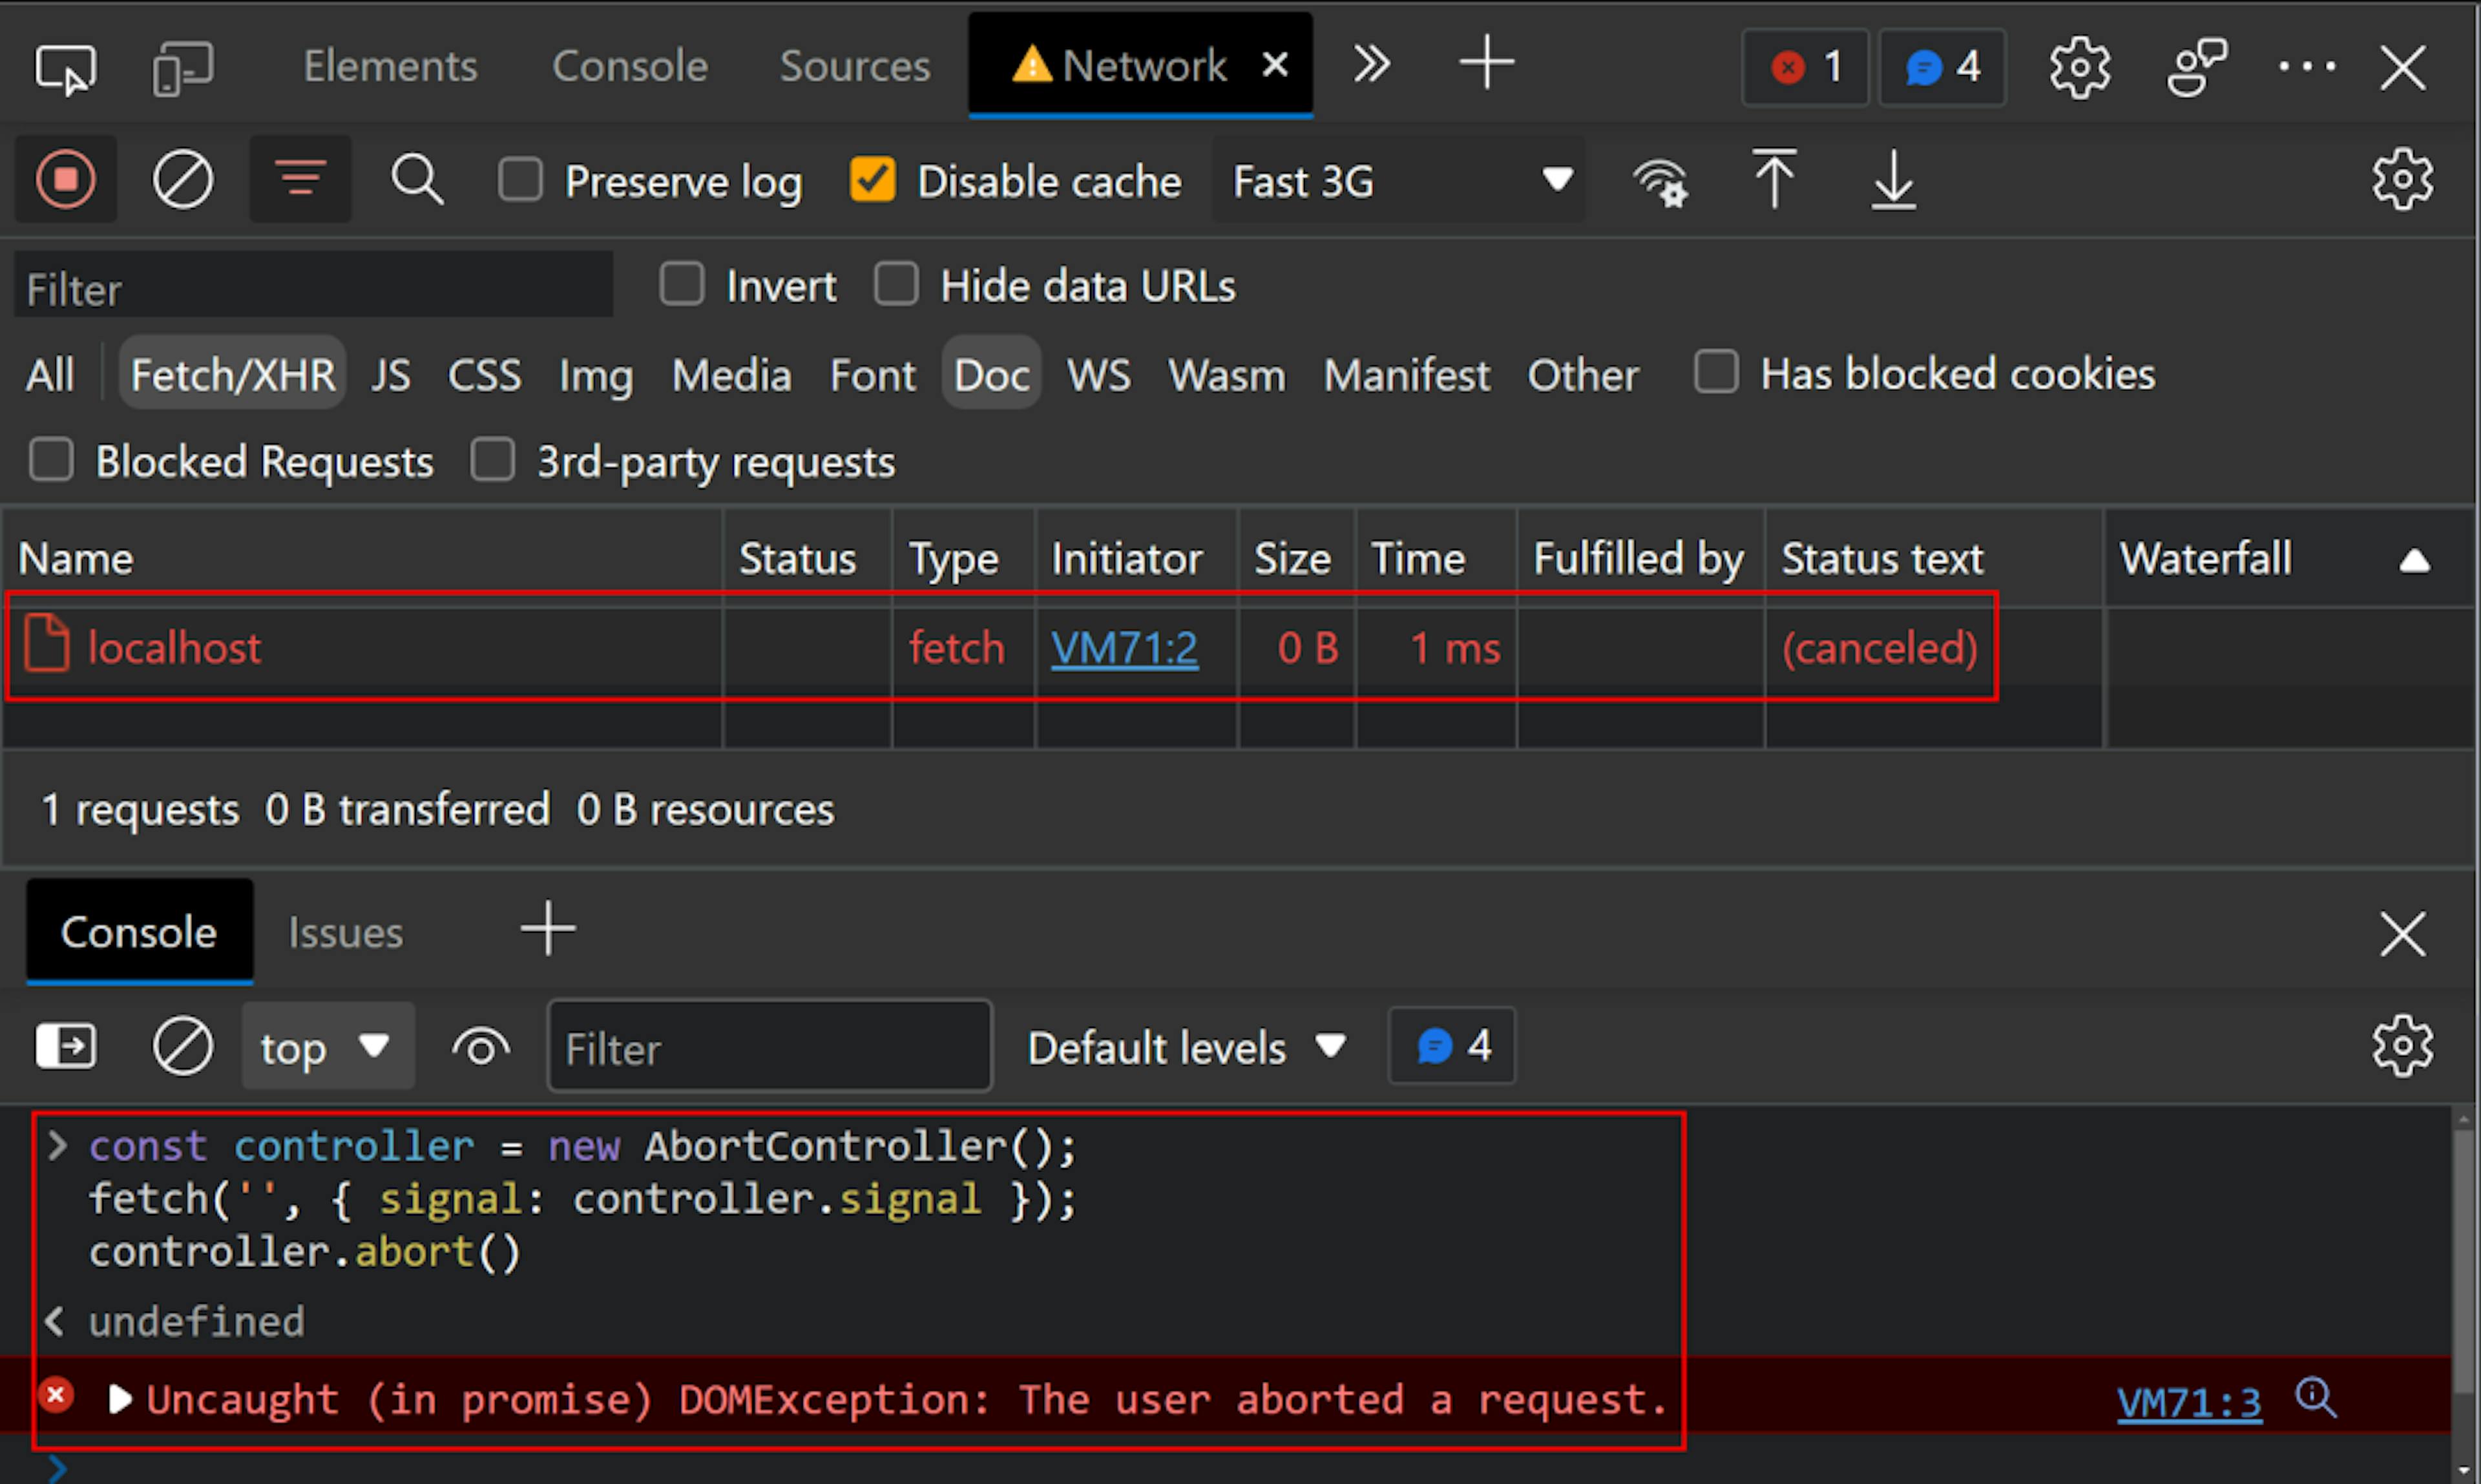 Las herramientas de desarrollo de Chrome se abrieron a la red con la consola de JavaScript abierta. En la consola está el código "const controller = new AbortController();fetch('', { signal: controller.signal });controller.abort()", seguido de la excepción, "Uncaught (en promesa) DOMException: The el usuario canceló una solicitud". En la red, hay una solicitud a "localhost" con el texto de estado "(cancelado)"